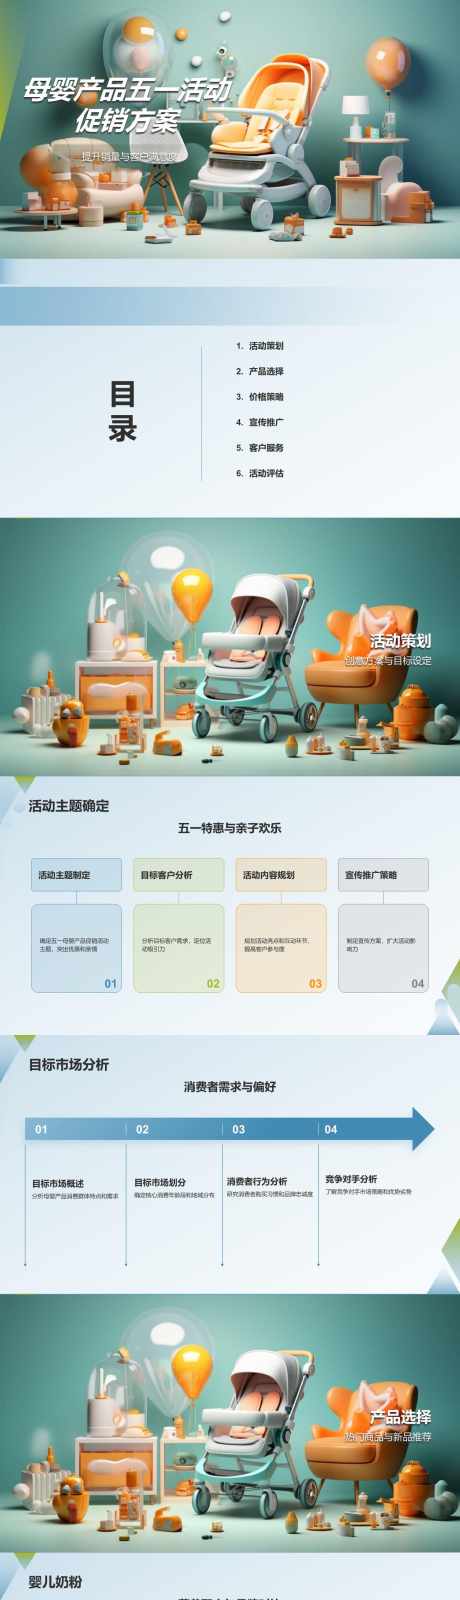 母婴产品五一活动促销方案PPT_源文件下载_PSD格式_1280X17280像素-策划,方案,促销,活动,五一,产品,母婴,PPT-作品编号:2024041915162966-志设-zs9.com